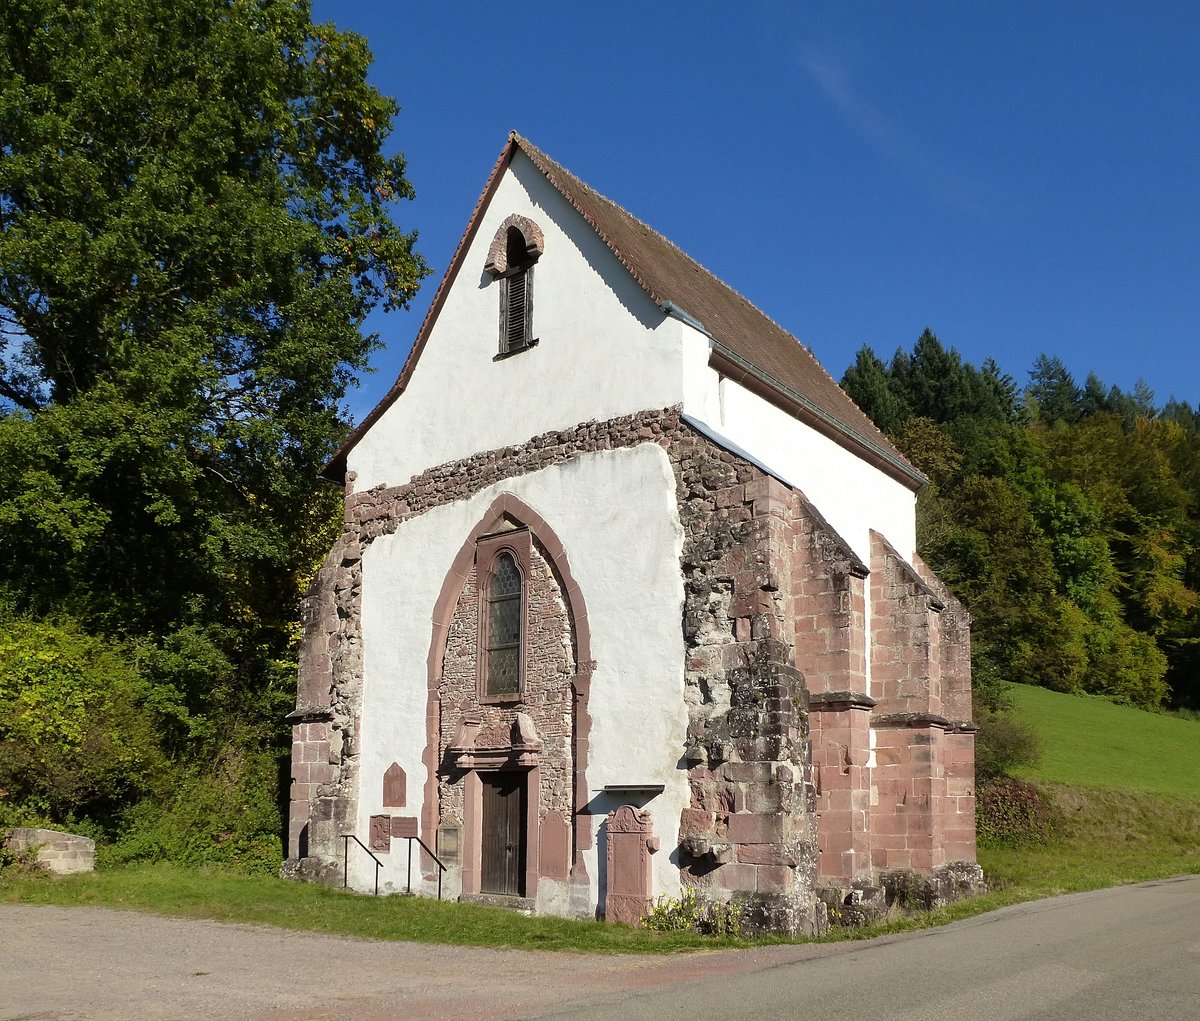 Tennenbach im LK Emmendingen, die ehemalige Hospitalkapelle ist der einzig erhaltene Teil der ehemals mchtigen Klosteranlage der Zisterzienser, Okt.2016